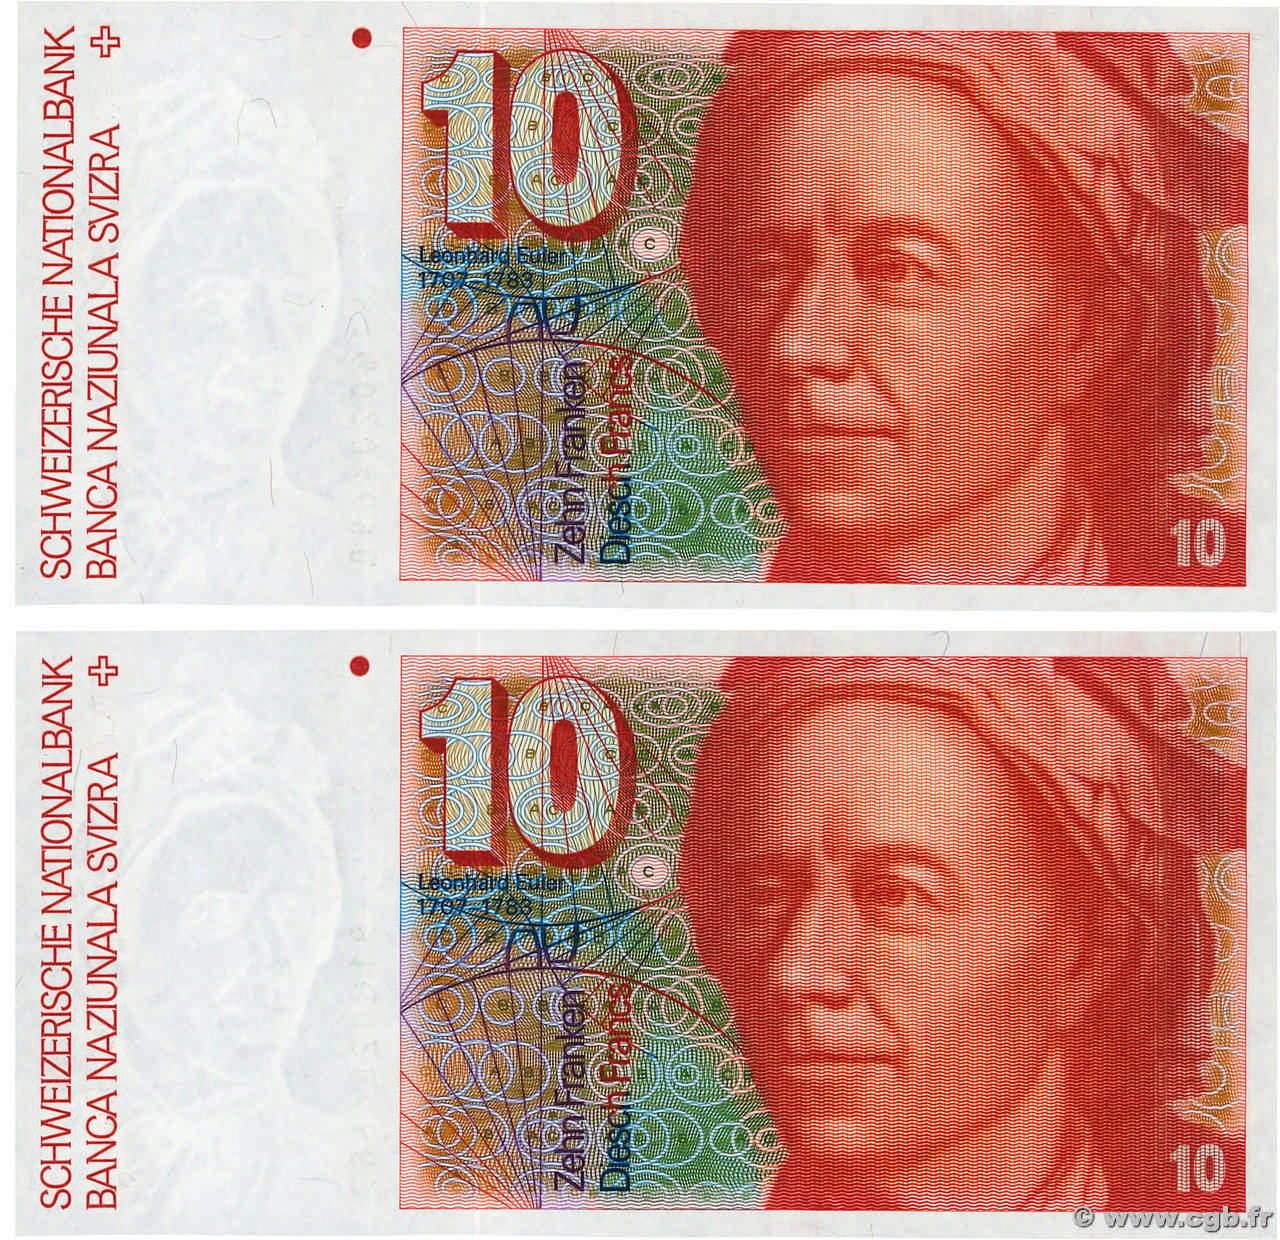 10 Francs Consécutifs SUISSE  1991 P.53j FDC